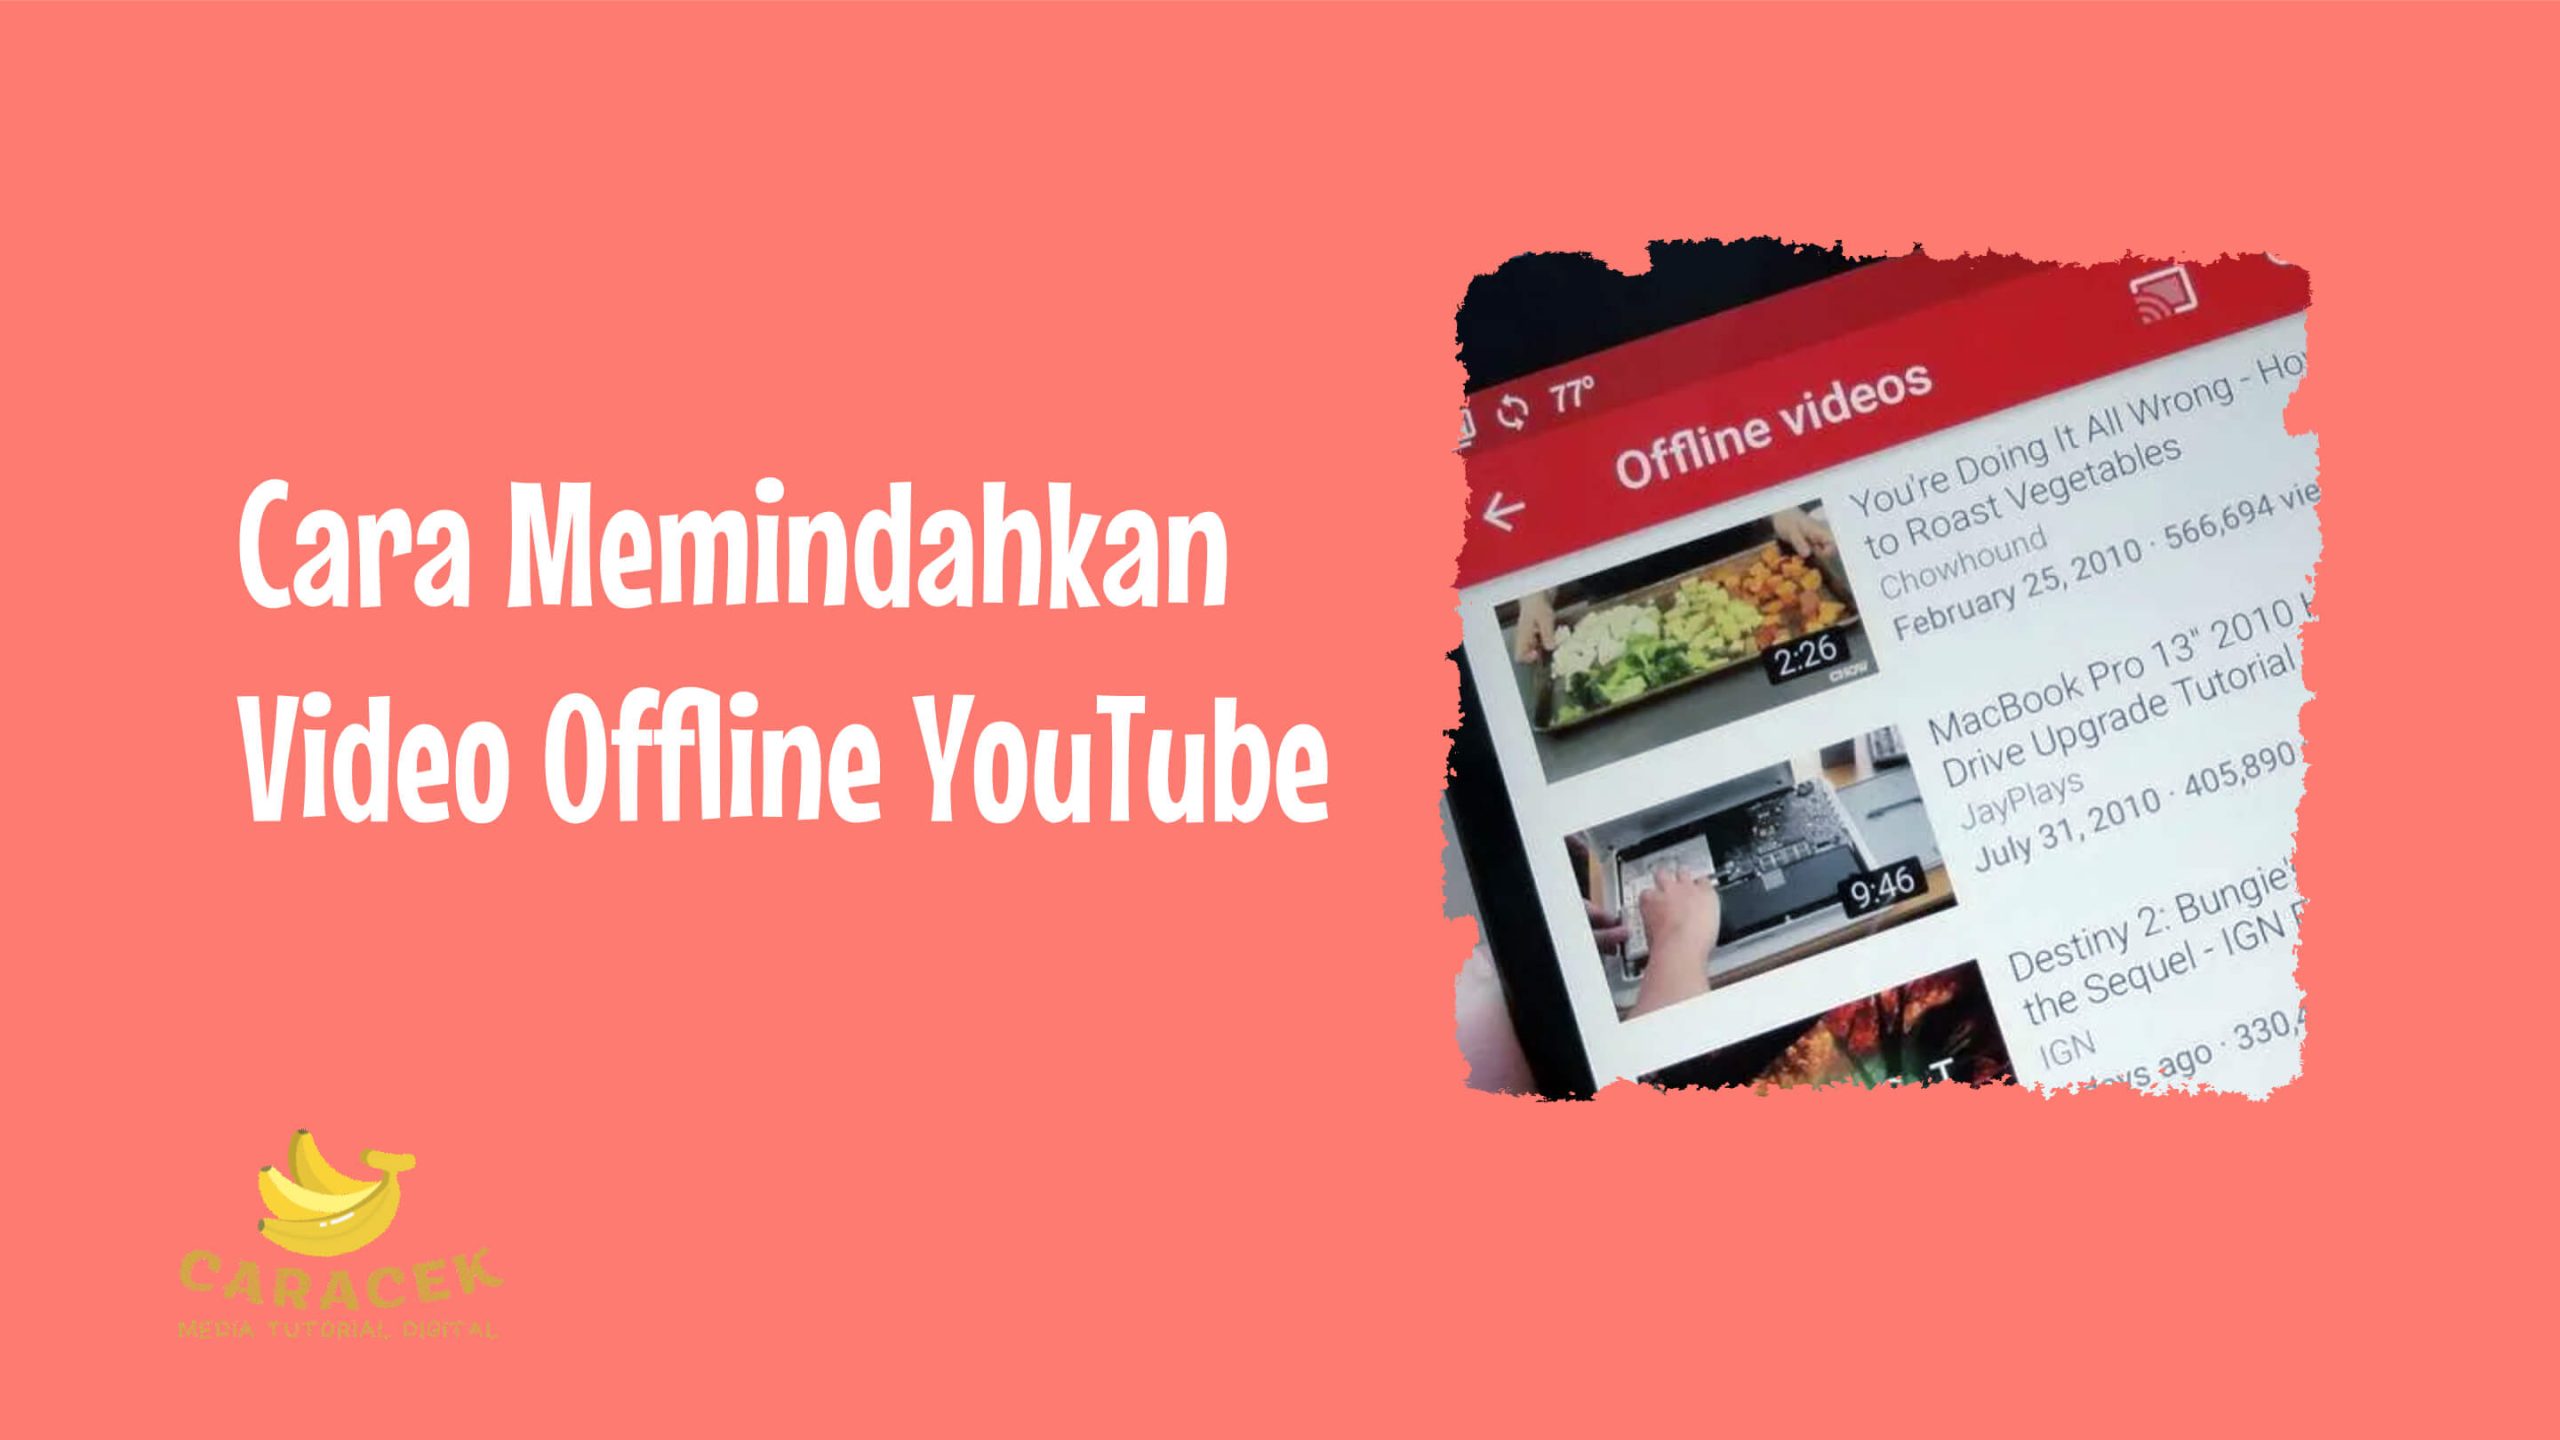 Cara Memindahkan Video Offline YouTube